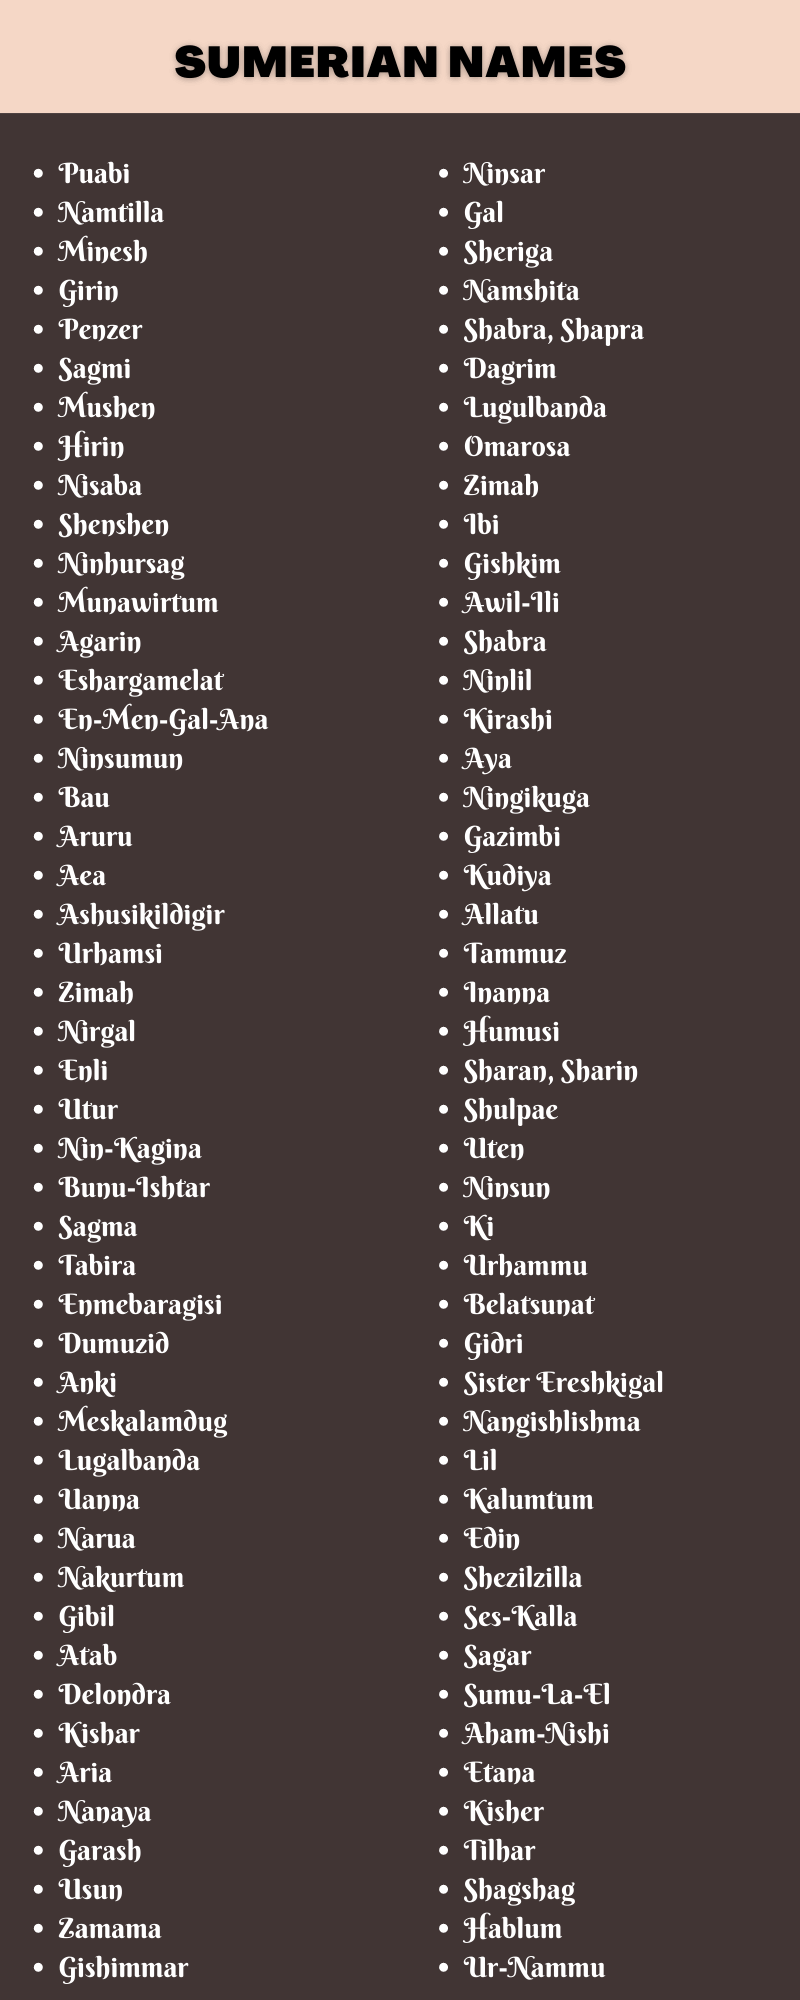 Sumerian Names